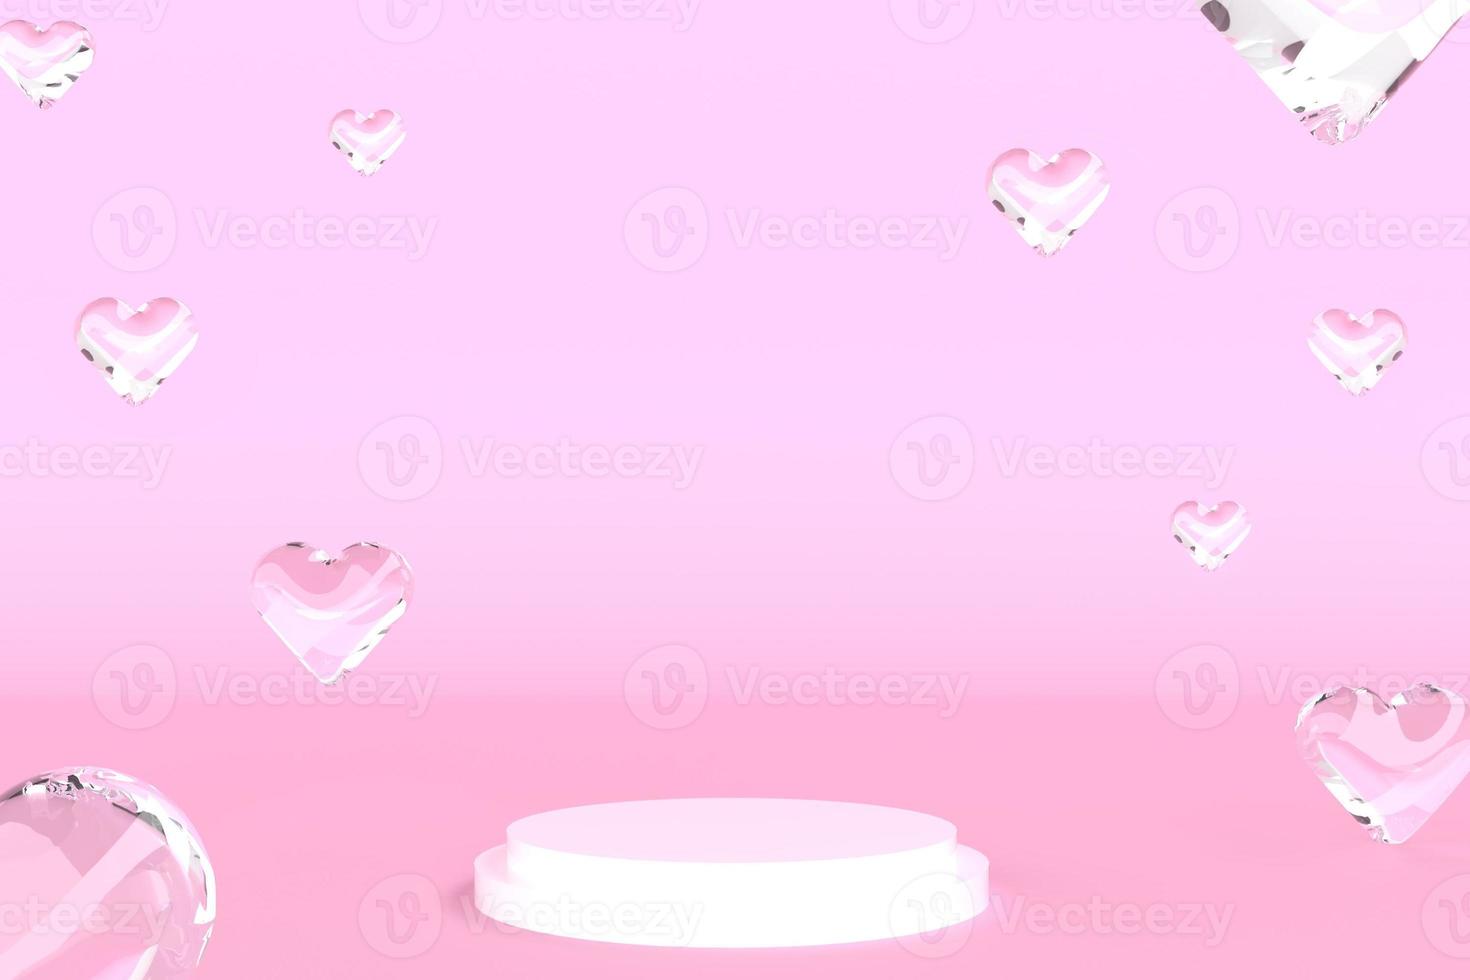 3d geef hart glas drijvend bel kristal glas water bal roze scène ronde podium stand podium voor parfum huidverzorging cosmetisch product gloeiende ring lijn lege ruimte achtergrond studio advertentie foto